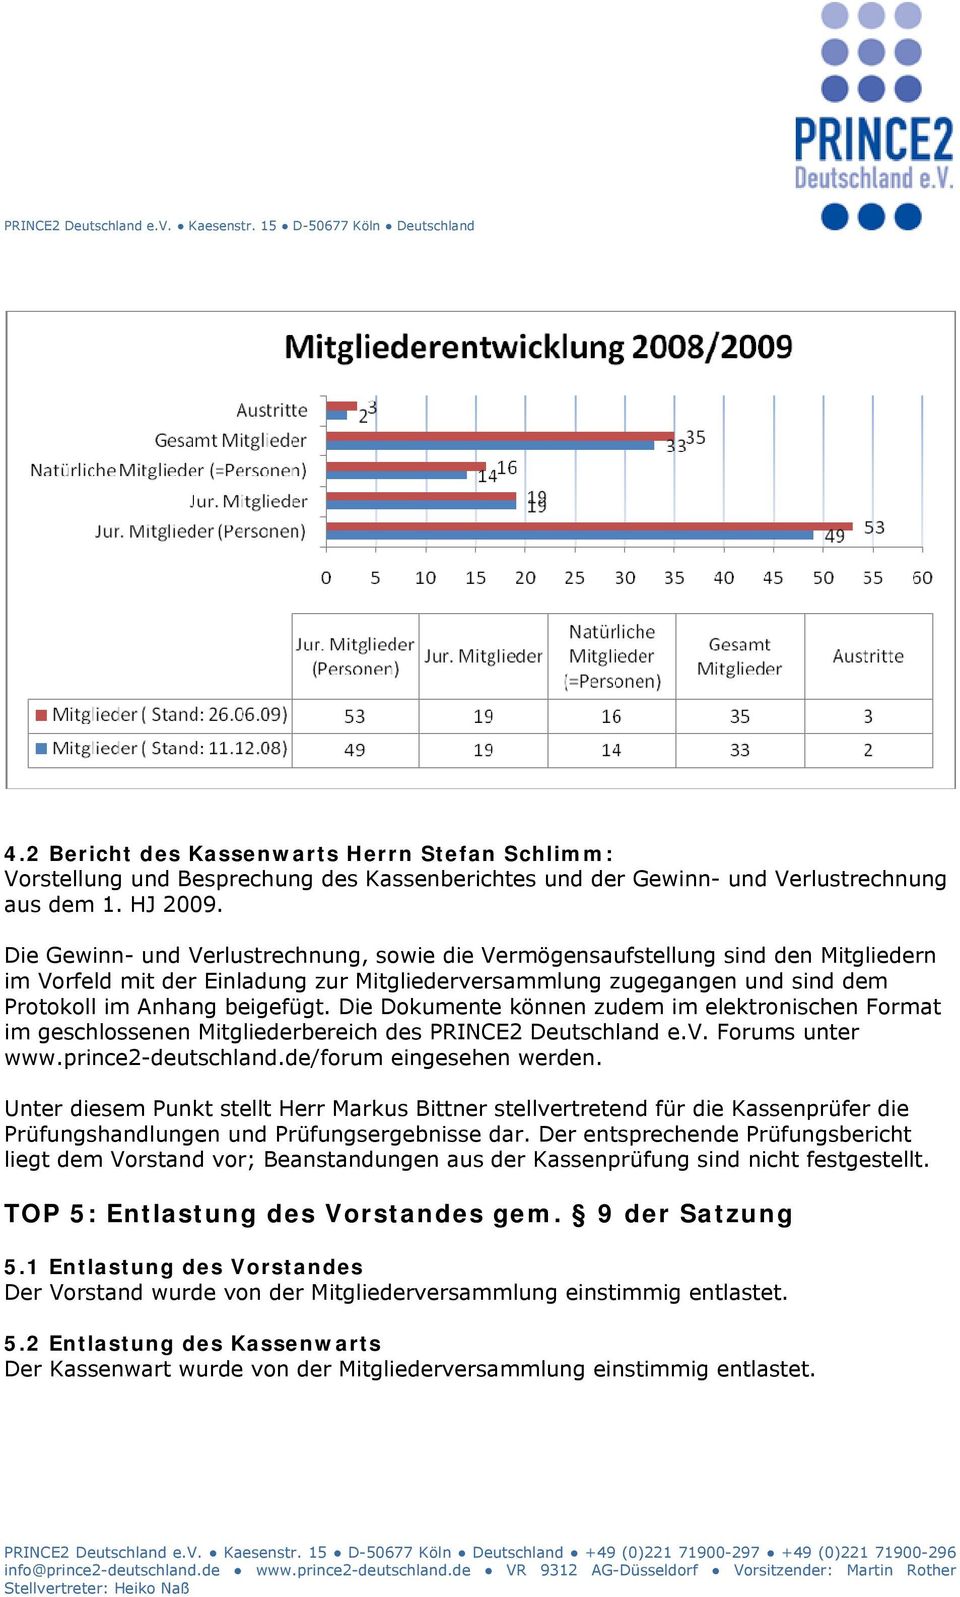 Die Dokumente können zudem im elektronischen Format im geschlossenen Mitgliederbereich des PRINCE2 Deutschland e.v. Forums unter www.prince2-deutschland.de/forum eingesehen werden.